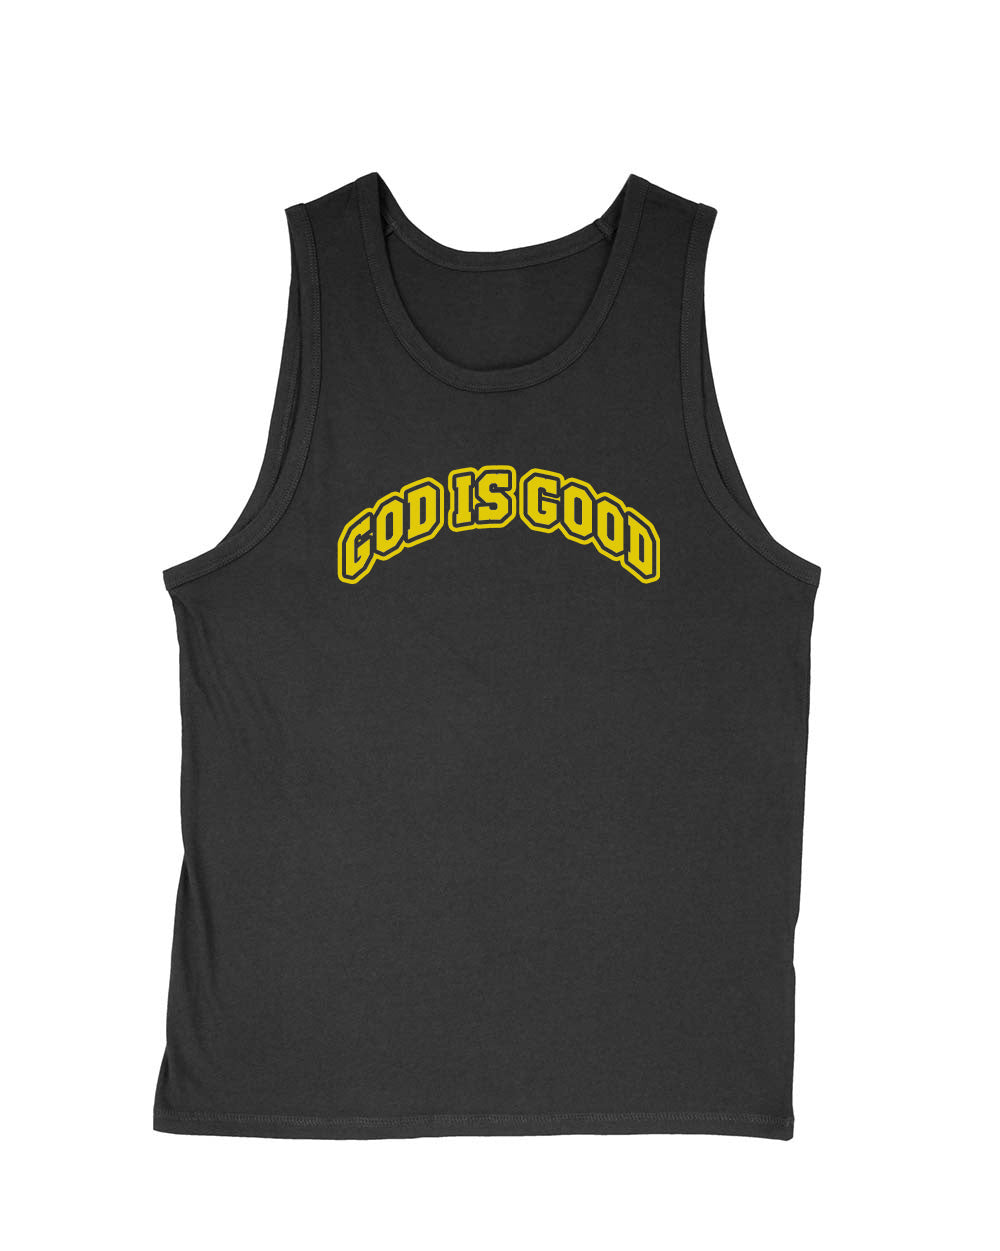 Men's | God Is Good | Tank Top